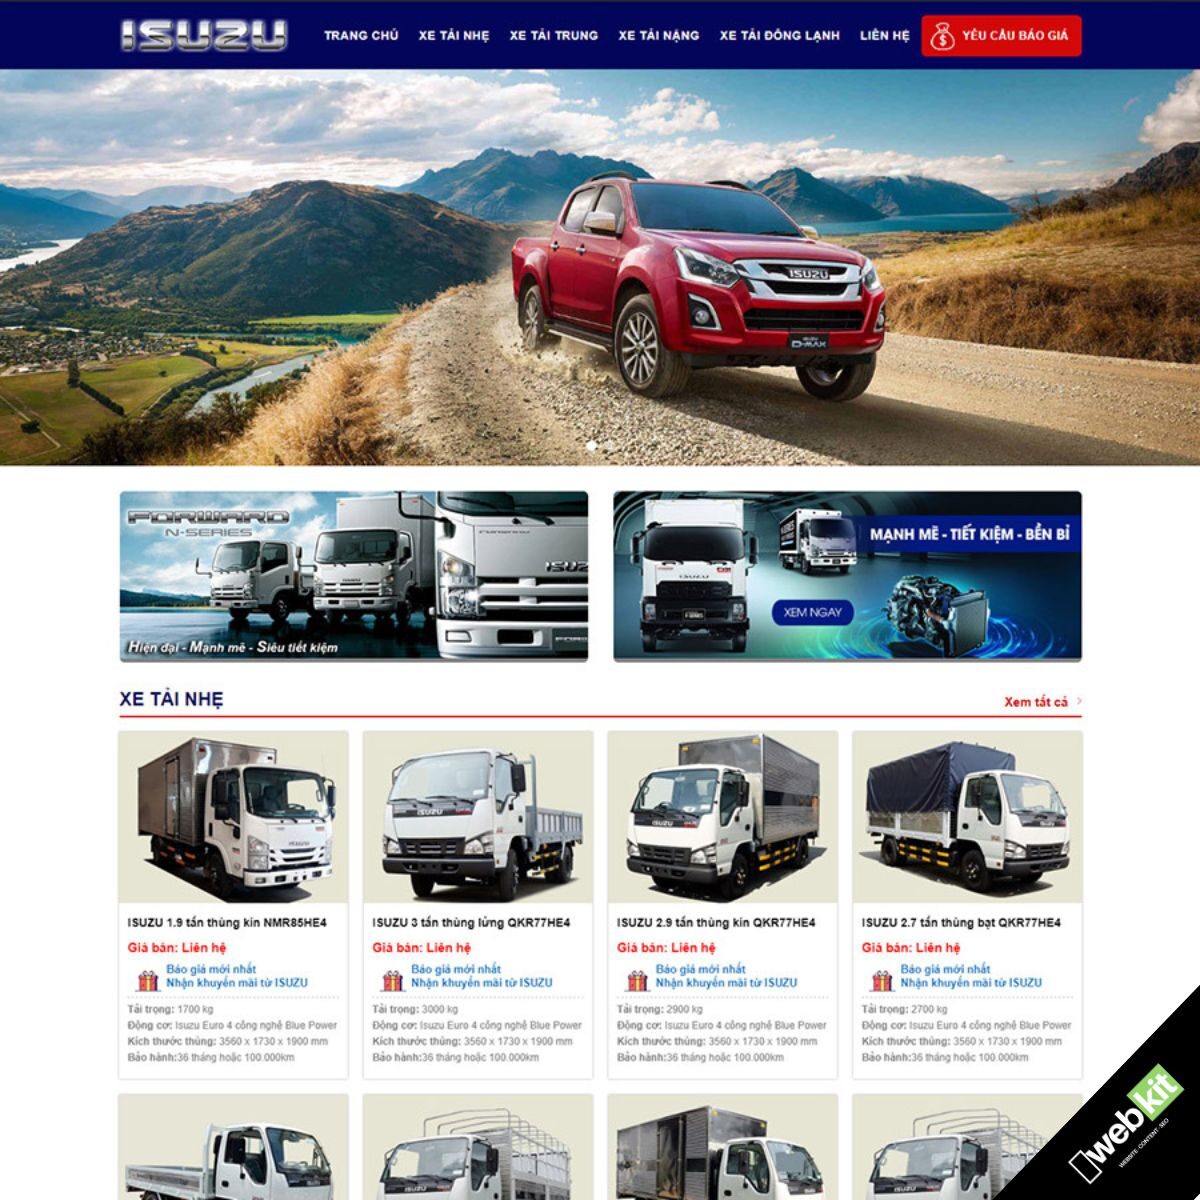 Thiết kế website bán xe ô tô đẹp, chuẩn SEO - WebKit 7960